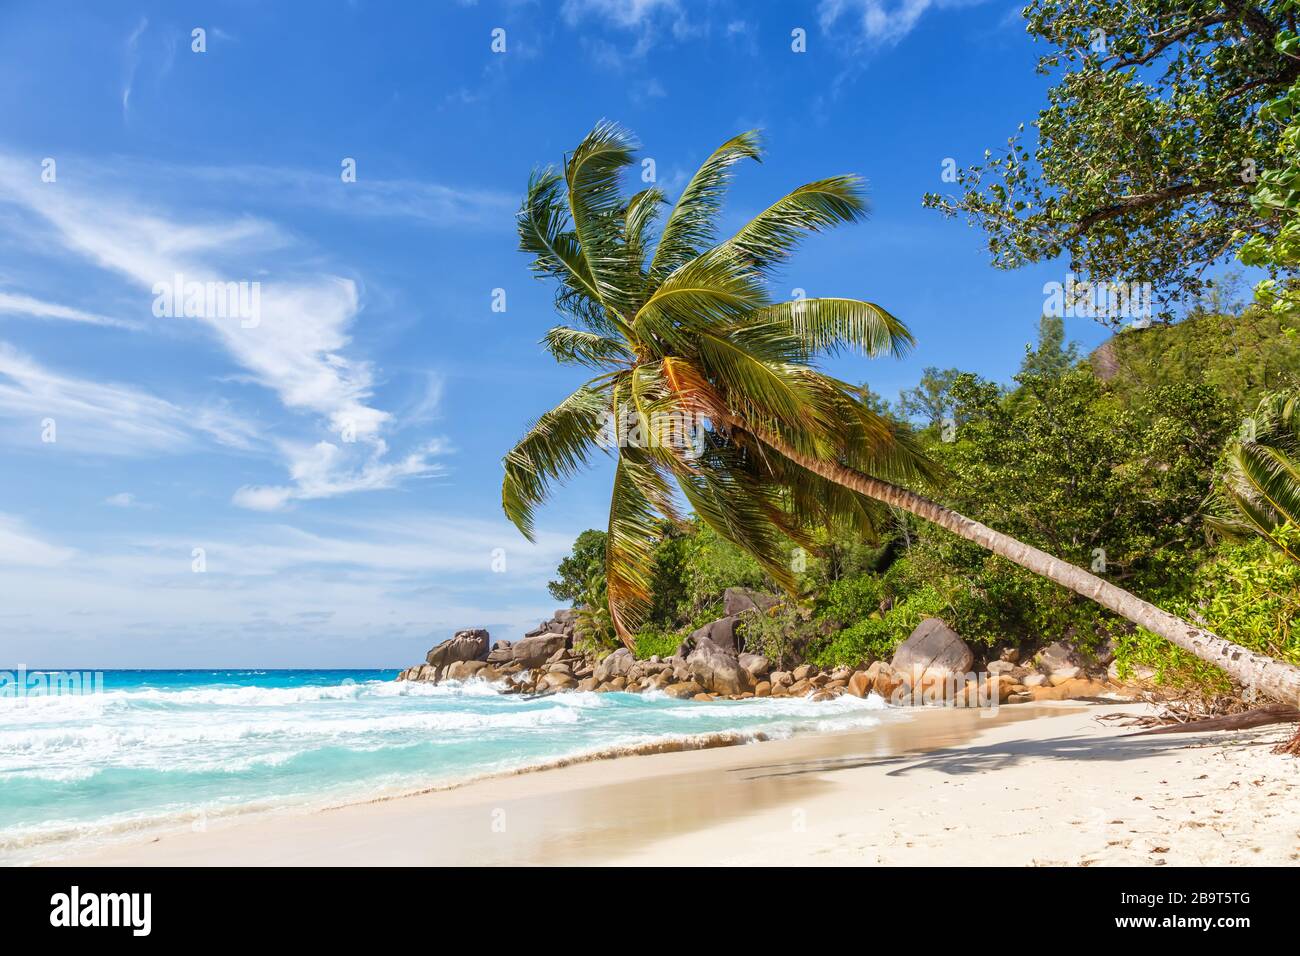 Seychellen Anse Georgette Strand Praslin Insel Palmenurlaub Paradies Meer Wasser Stockfoto